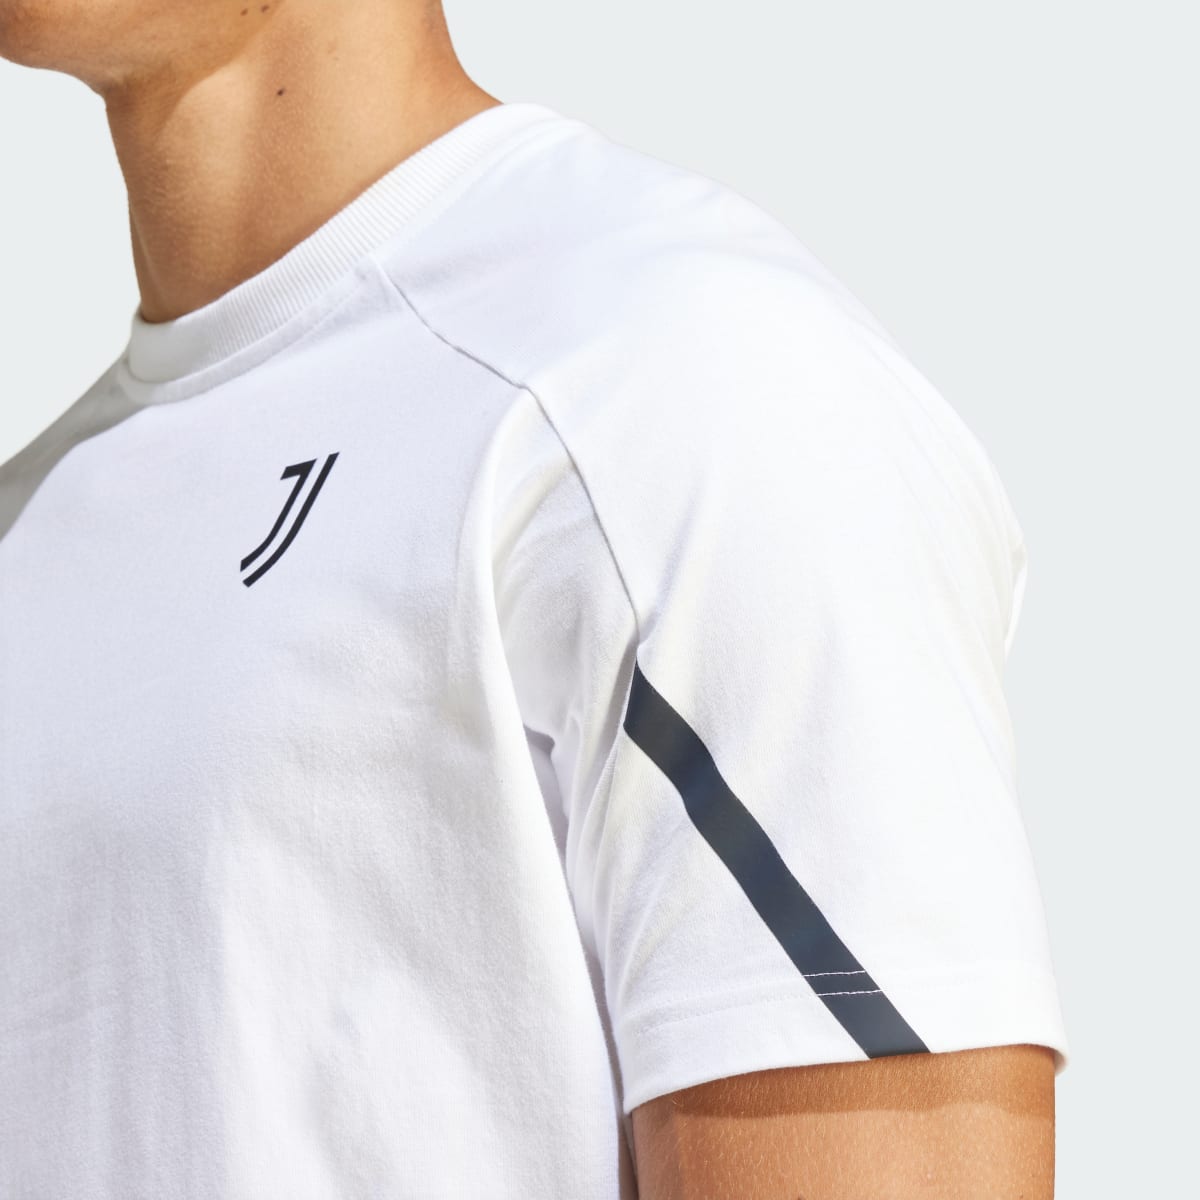 Adidas T-shirt Designed for Gameday da Juventus. 7